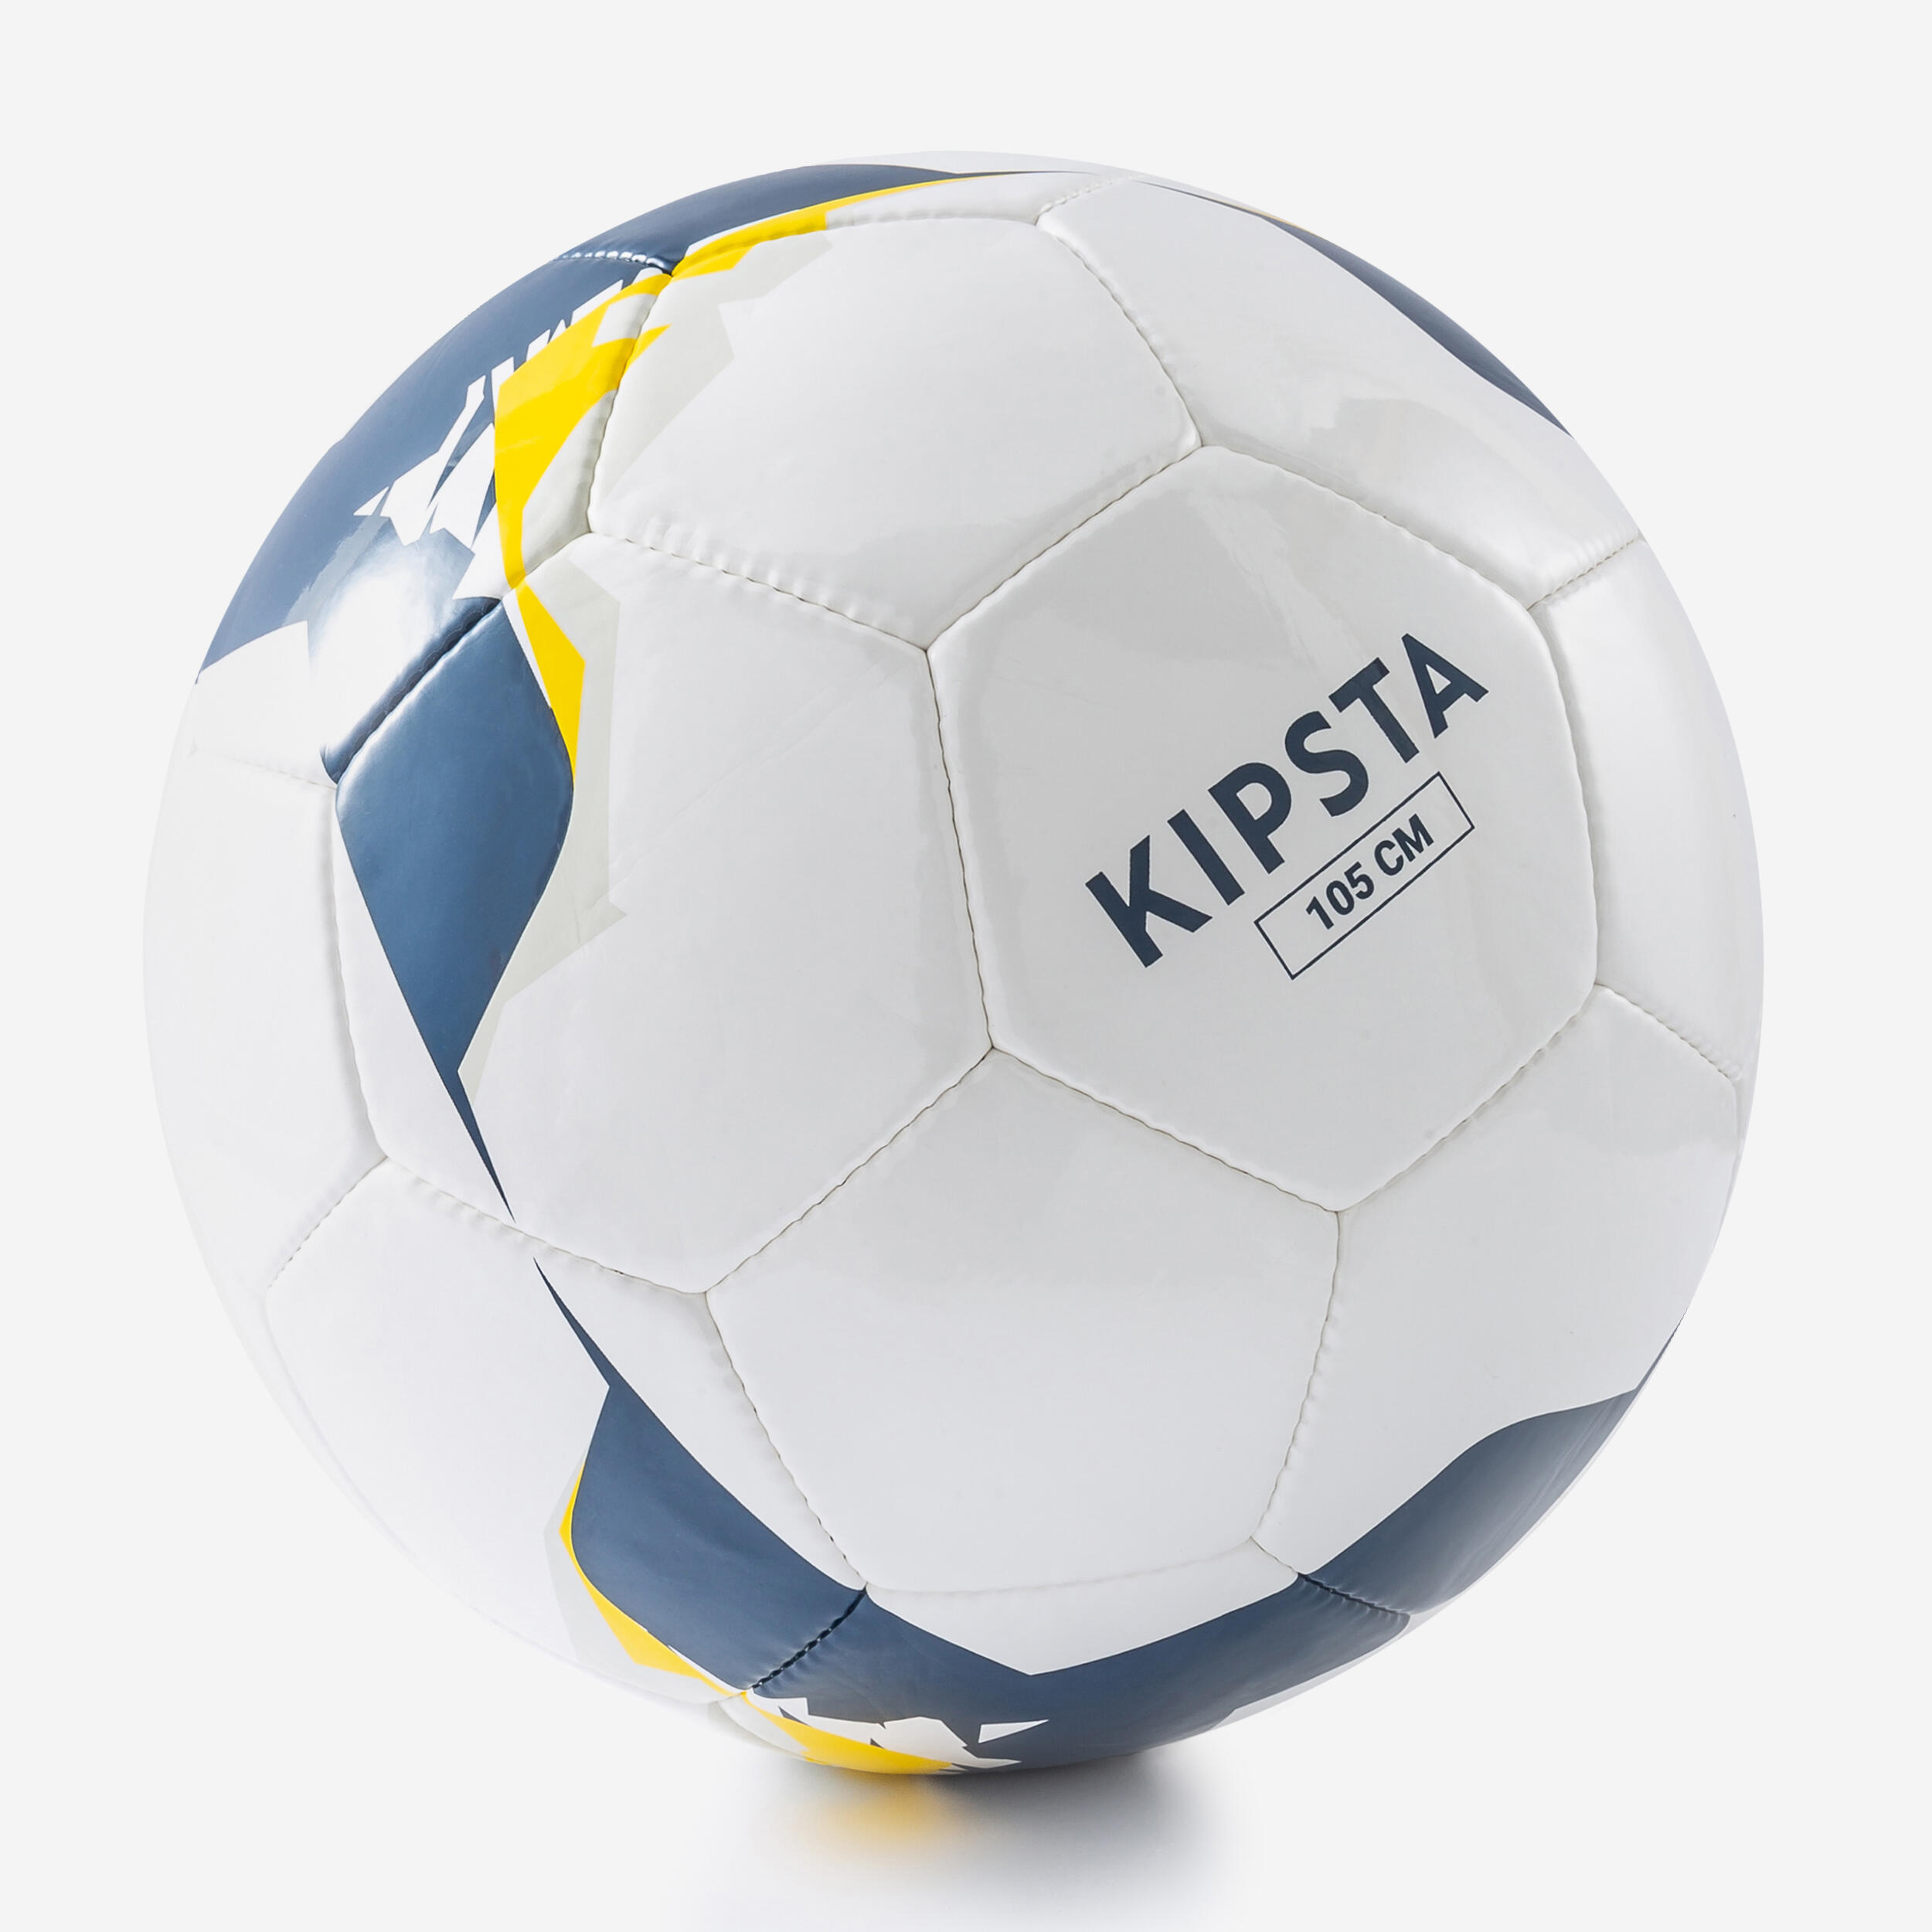 KIPSTA Powerchair Football Size 7 - White/Yellow